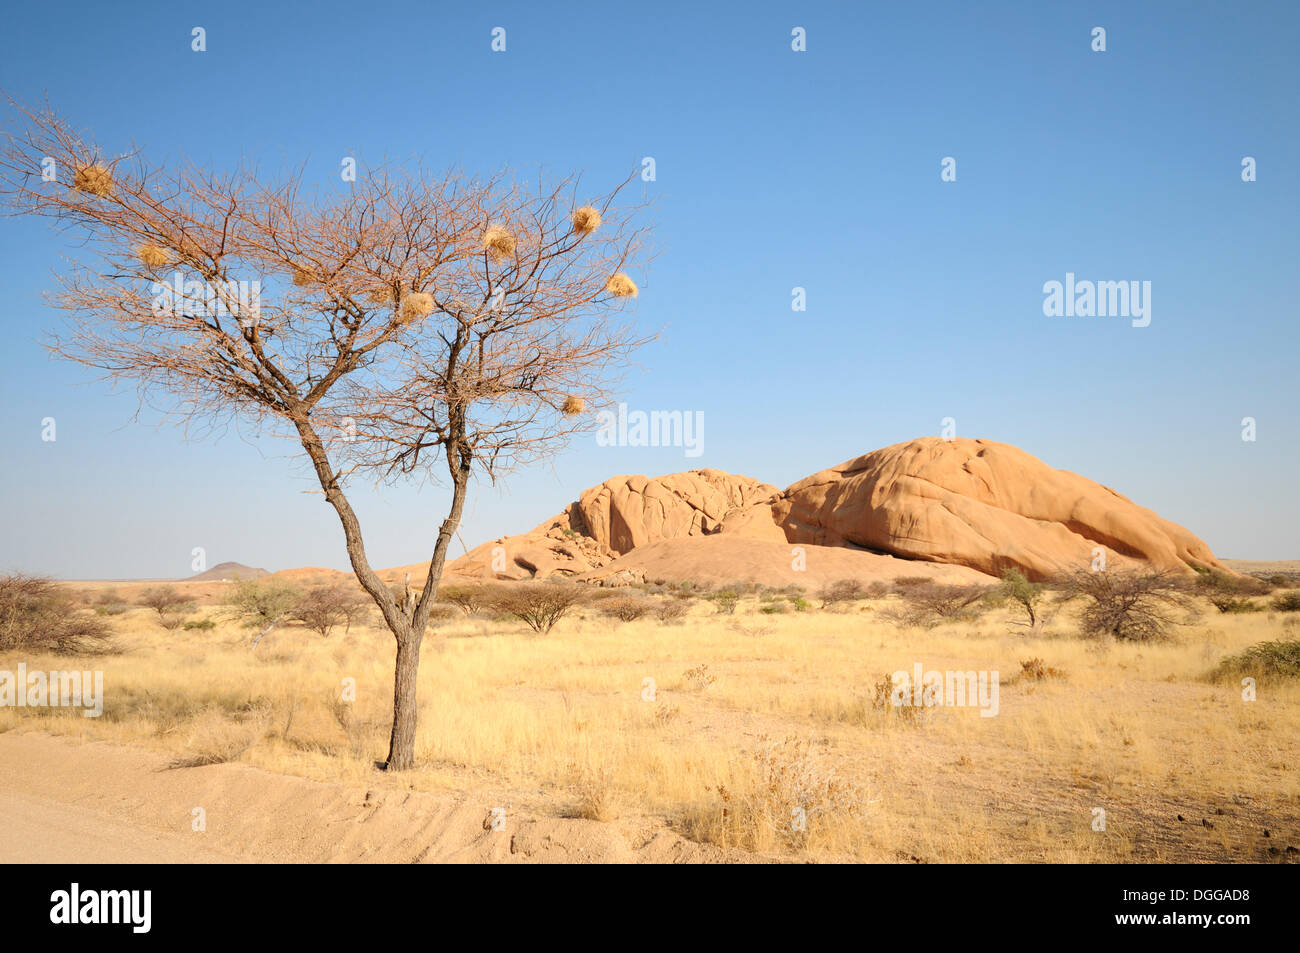 Paysage de savane avec des rochers de granit de la montagne, Pontok Spitzkuppe Große Spitzkoppe, réserve naturelle, la Namibie Banque D'Images